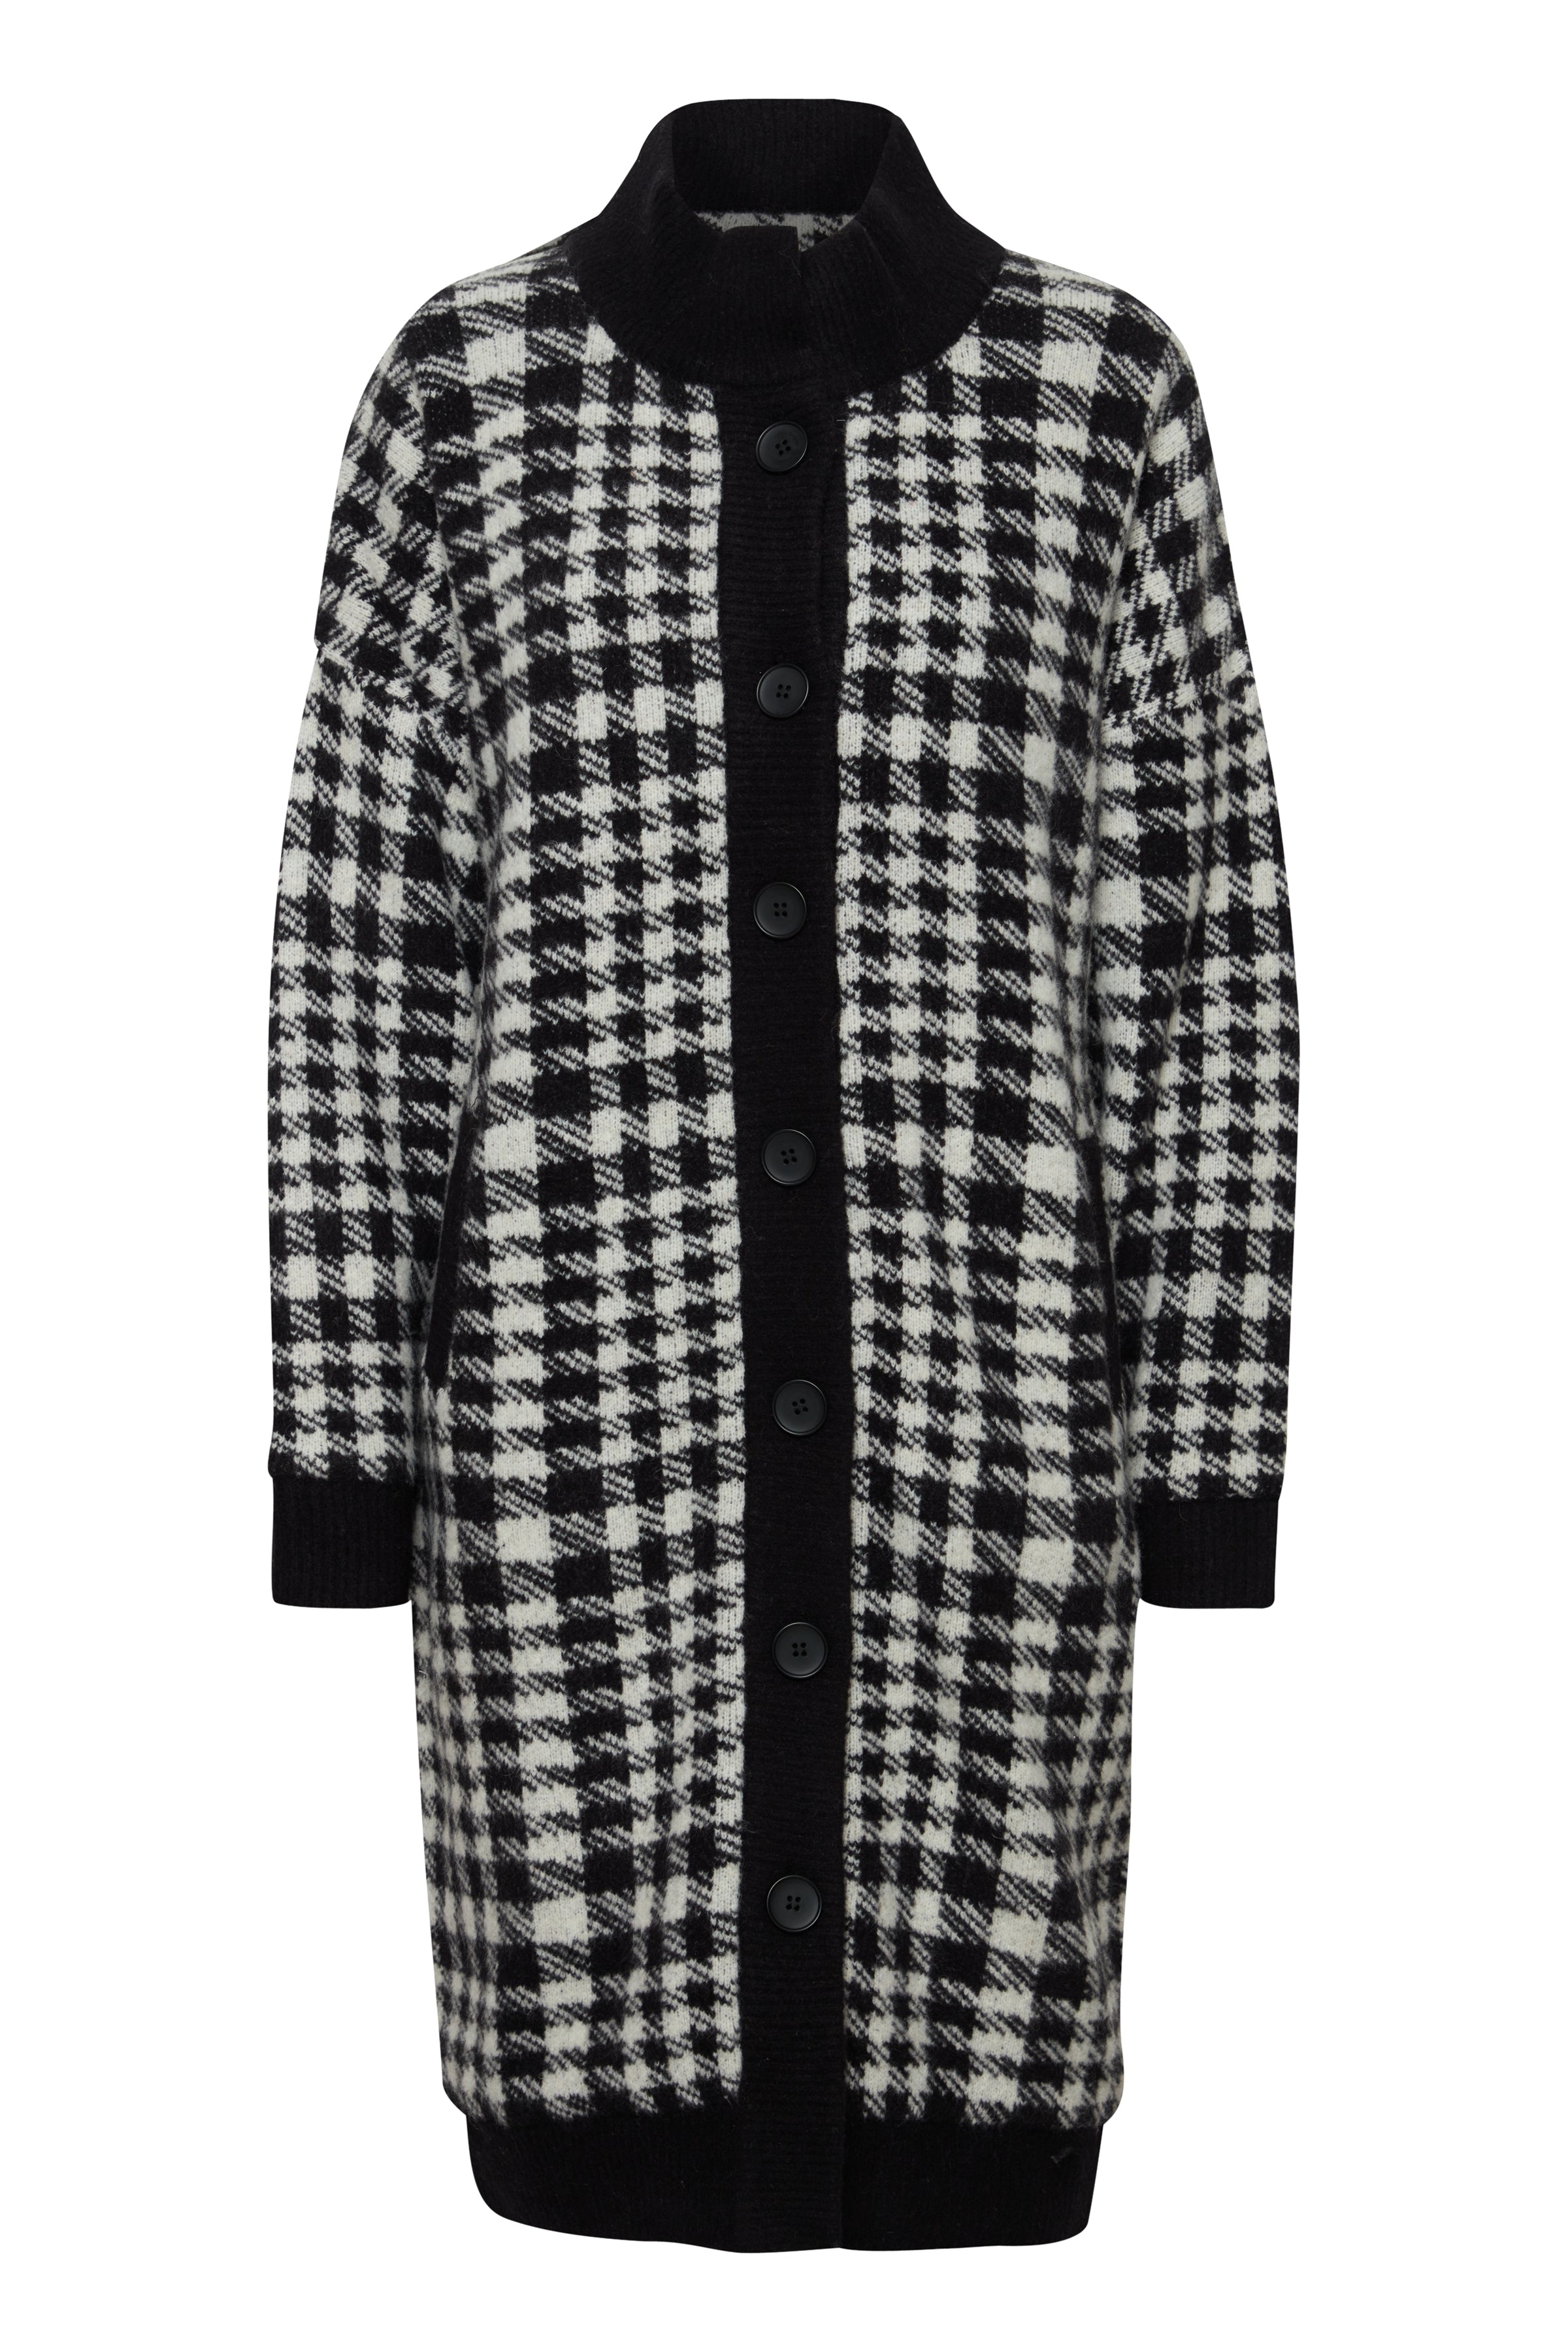 Ihazito black and white checkered coat | Ichi